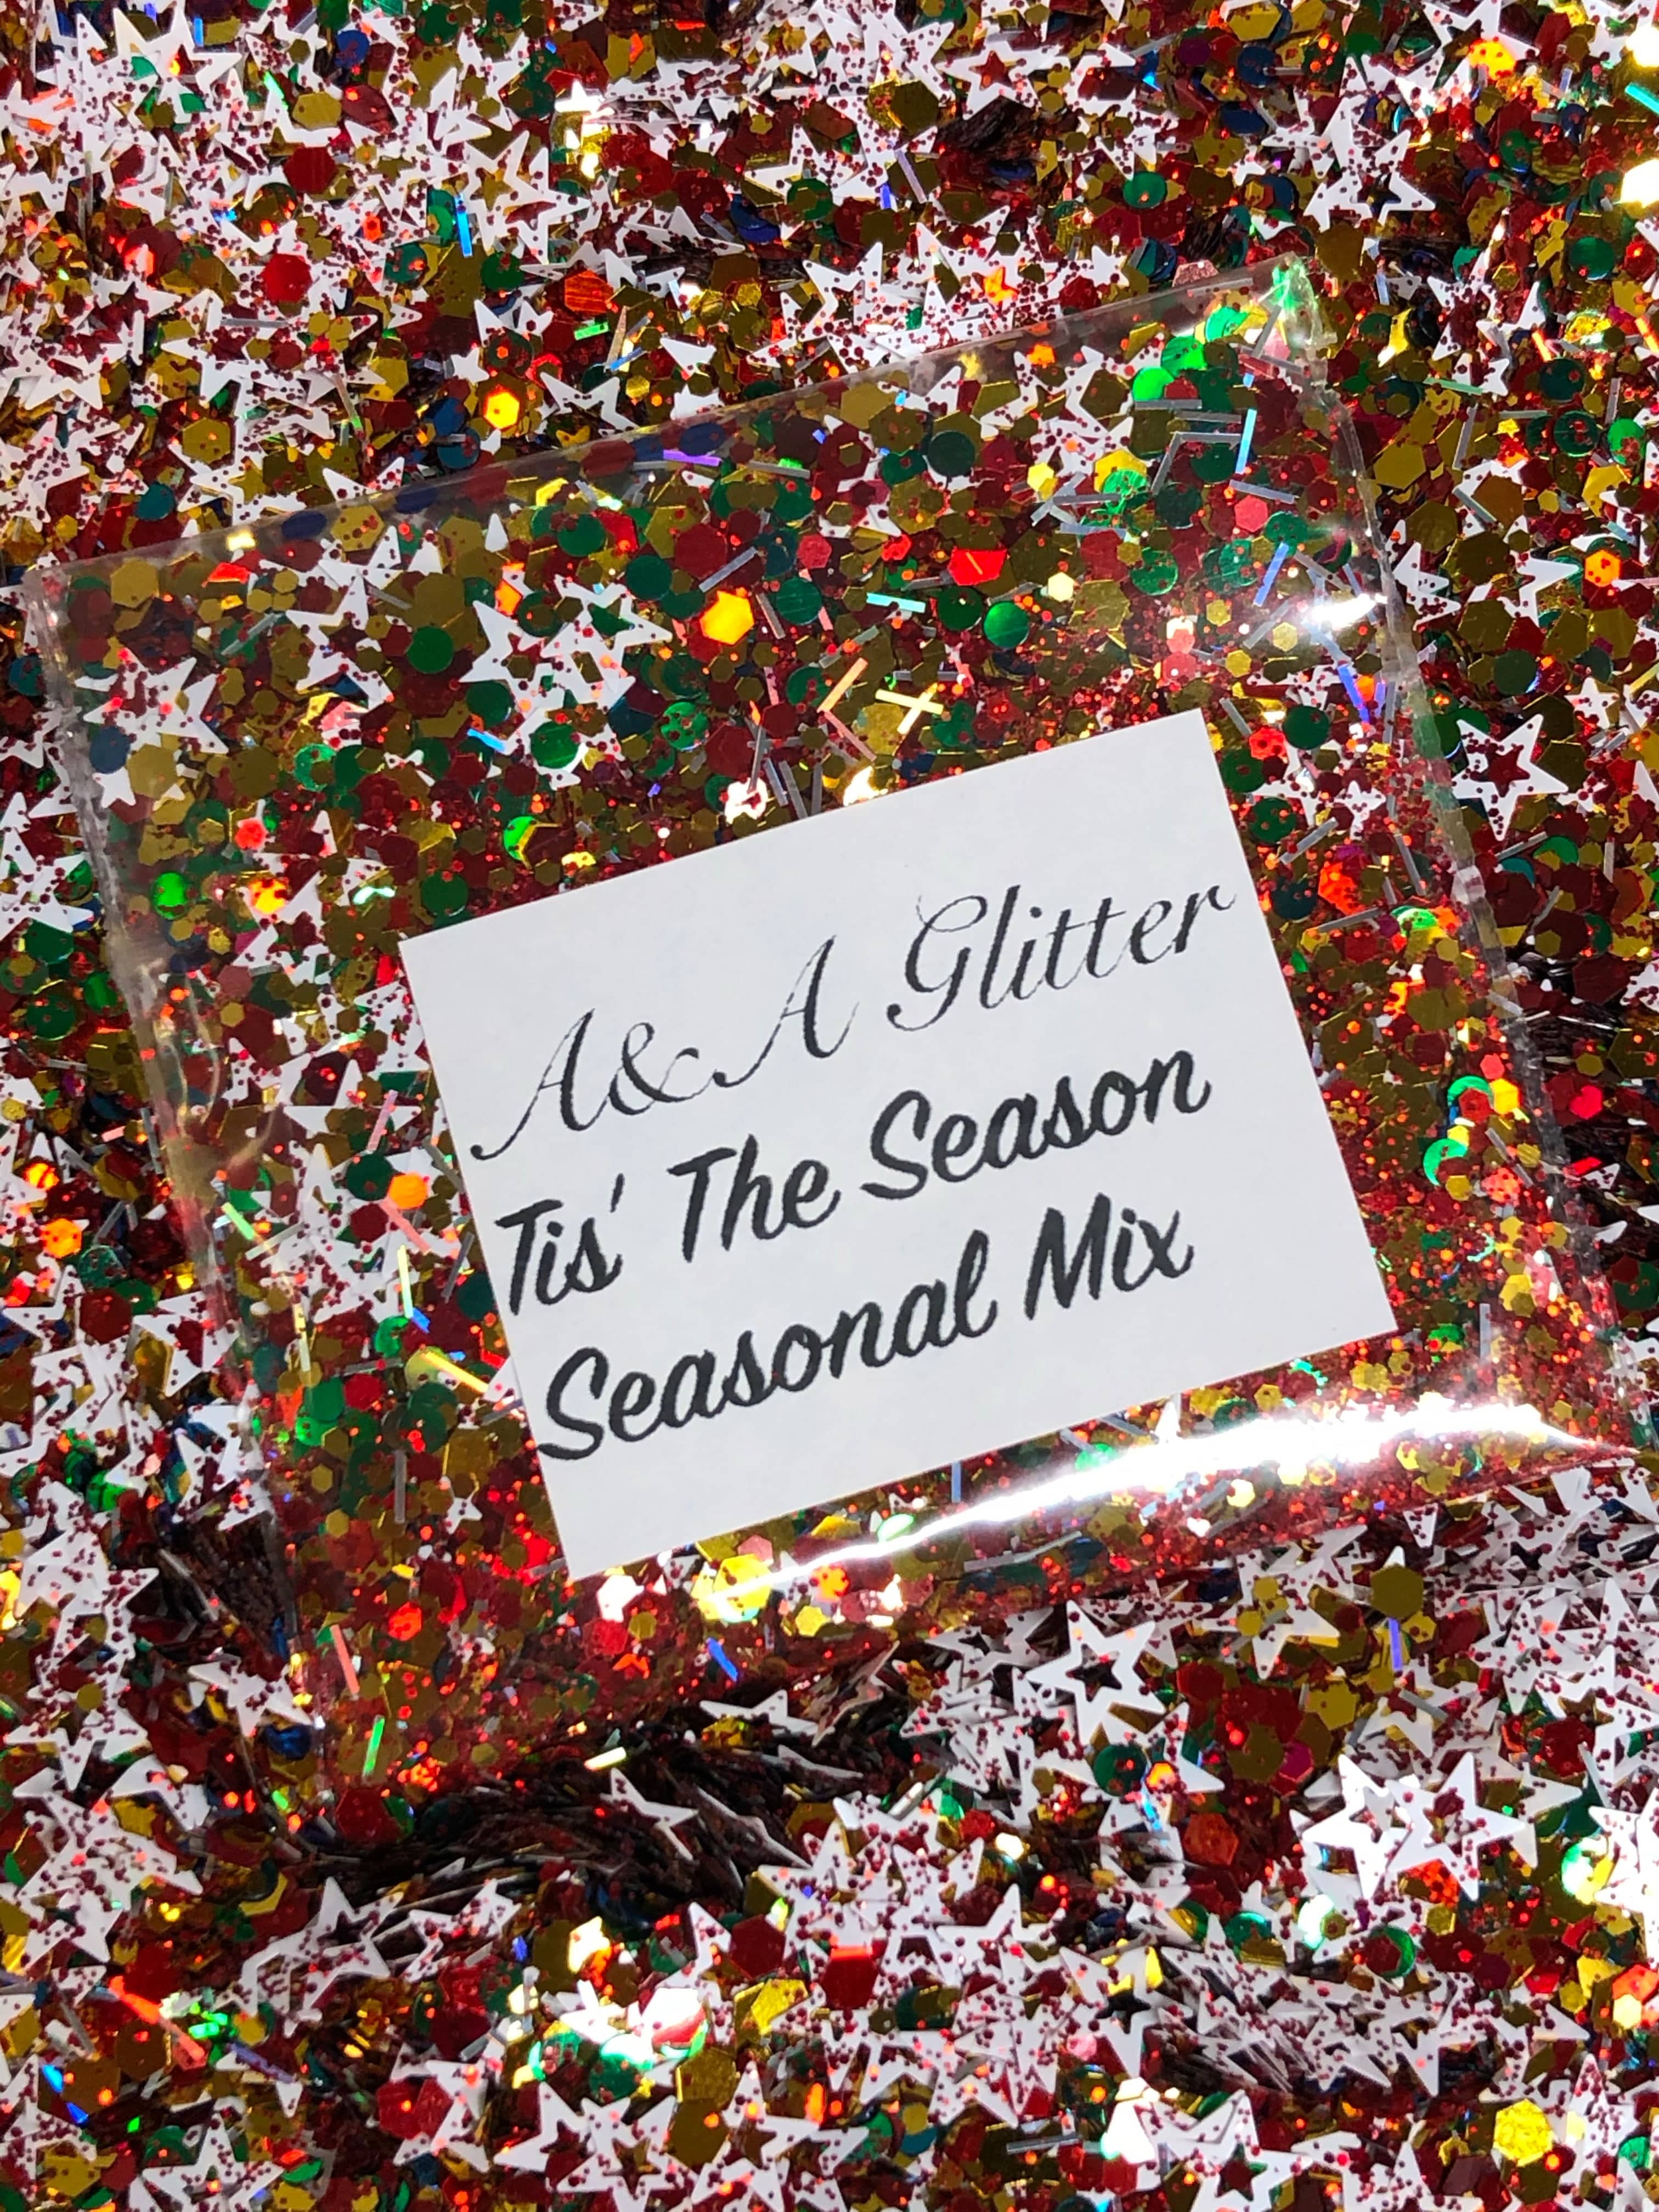 Tis’ the Season - Seasonal Mix